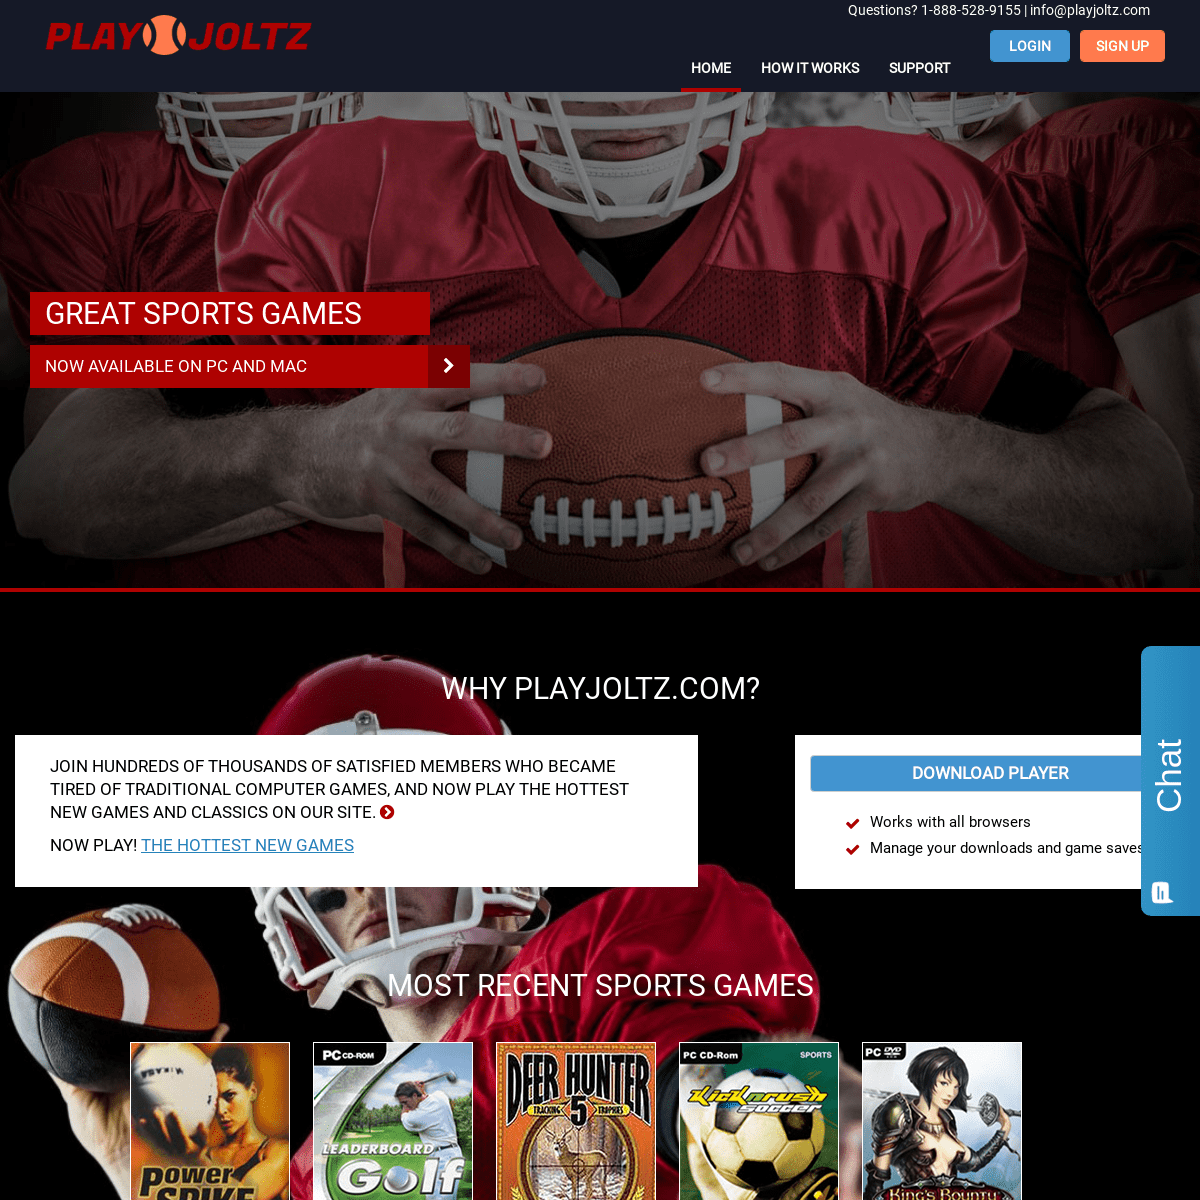 playjoltz.com - Home Page